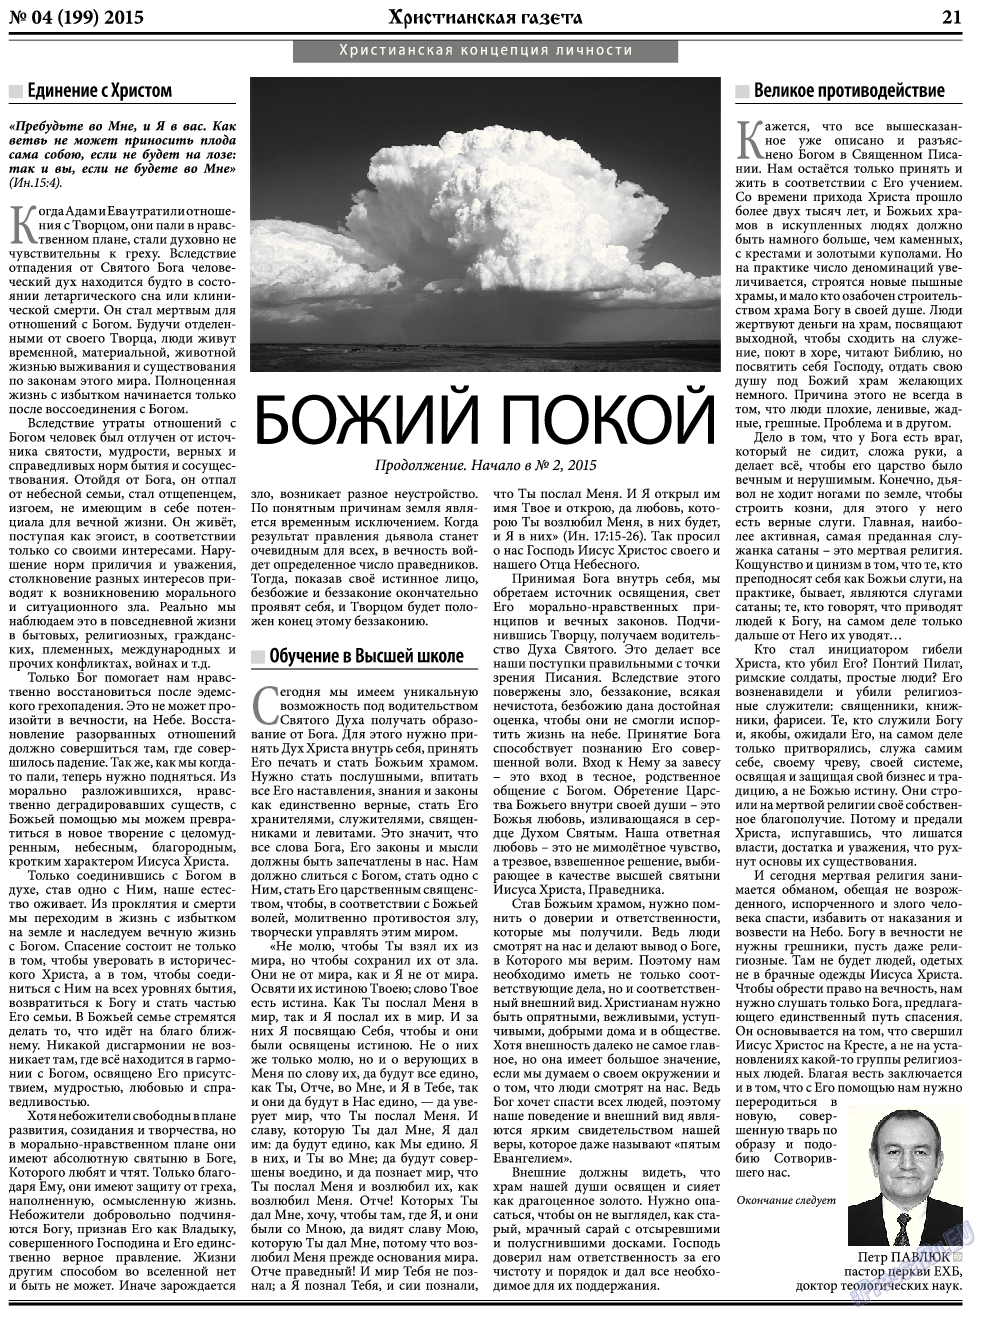 Христианская газета, газета. 2015 №4 стр.29